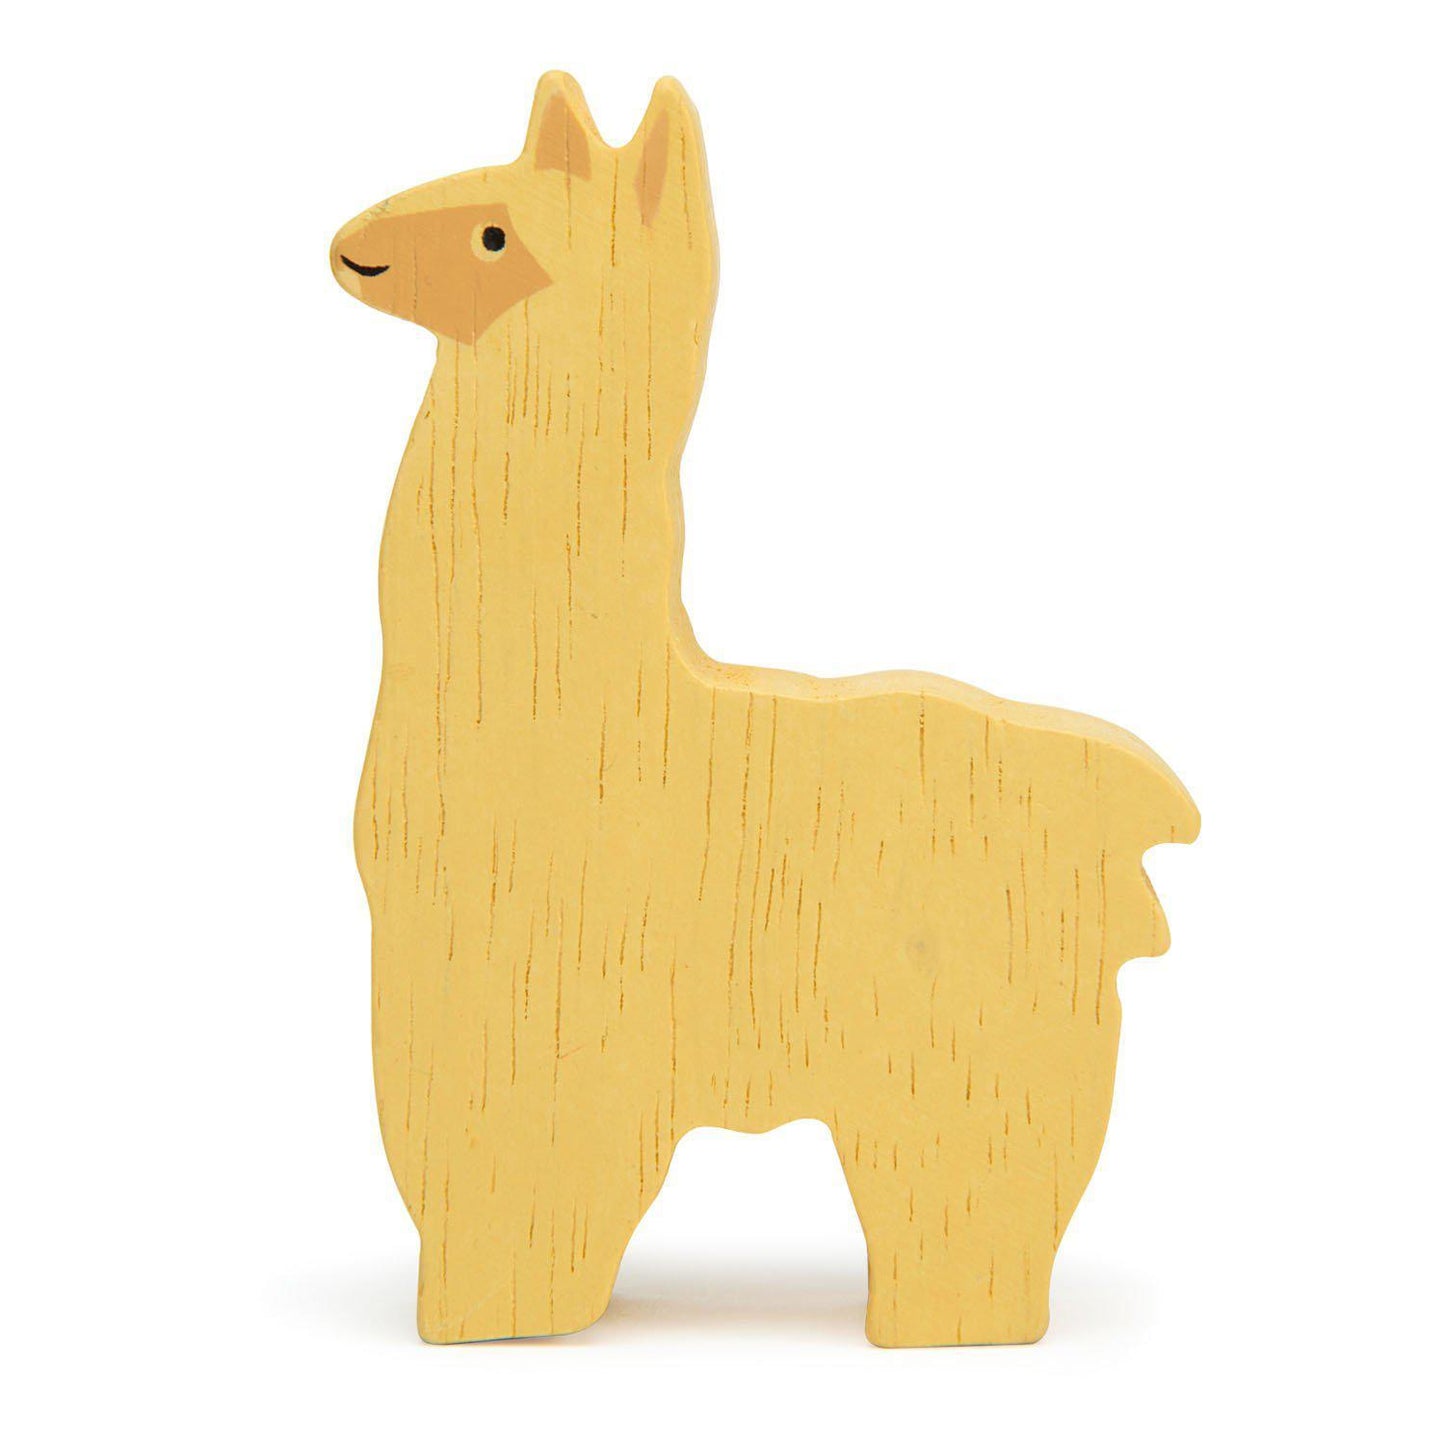 Alpakka, prémium minőségű fából - Alpaca - Tender Leaf Toys-Tender Leaf Toys-1-Játszma.ro - A maradandó élmények boltja